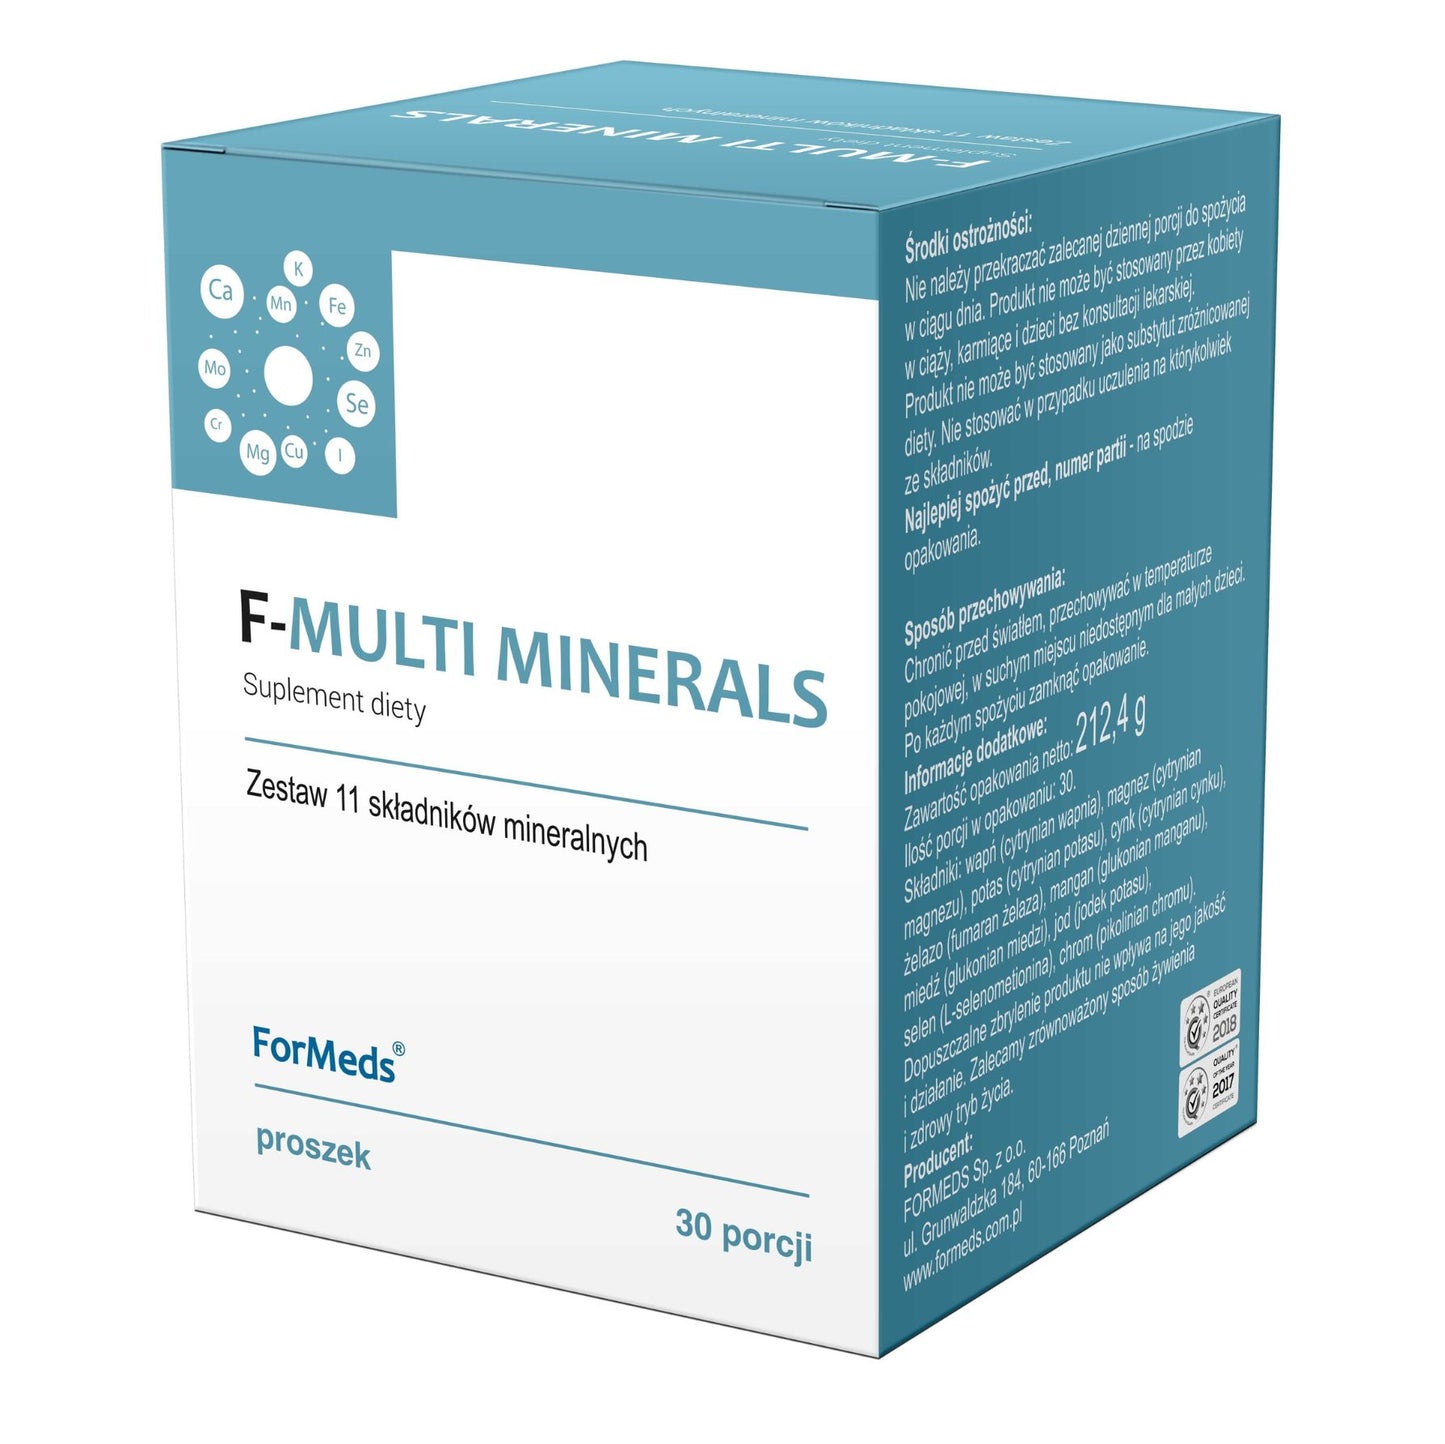 F-multi minerals